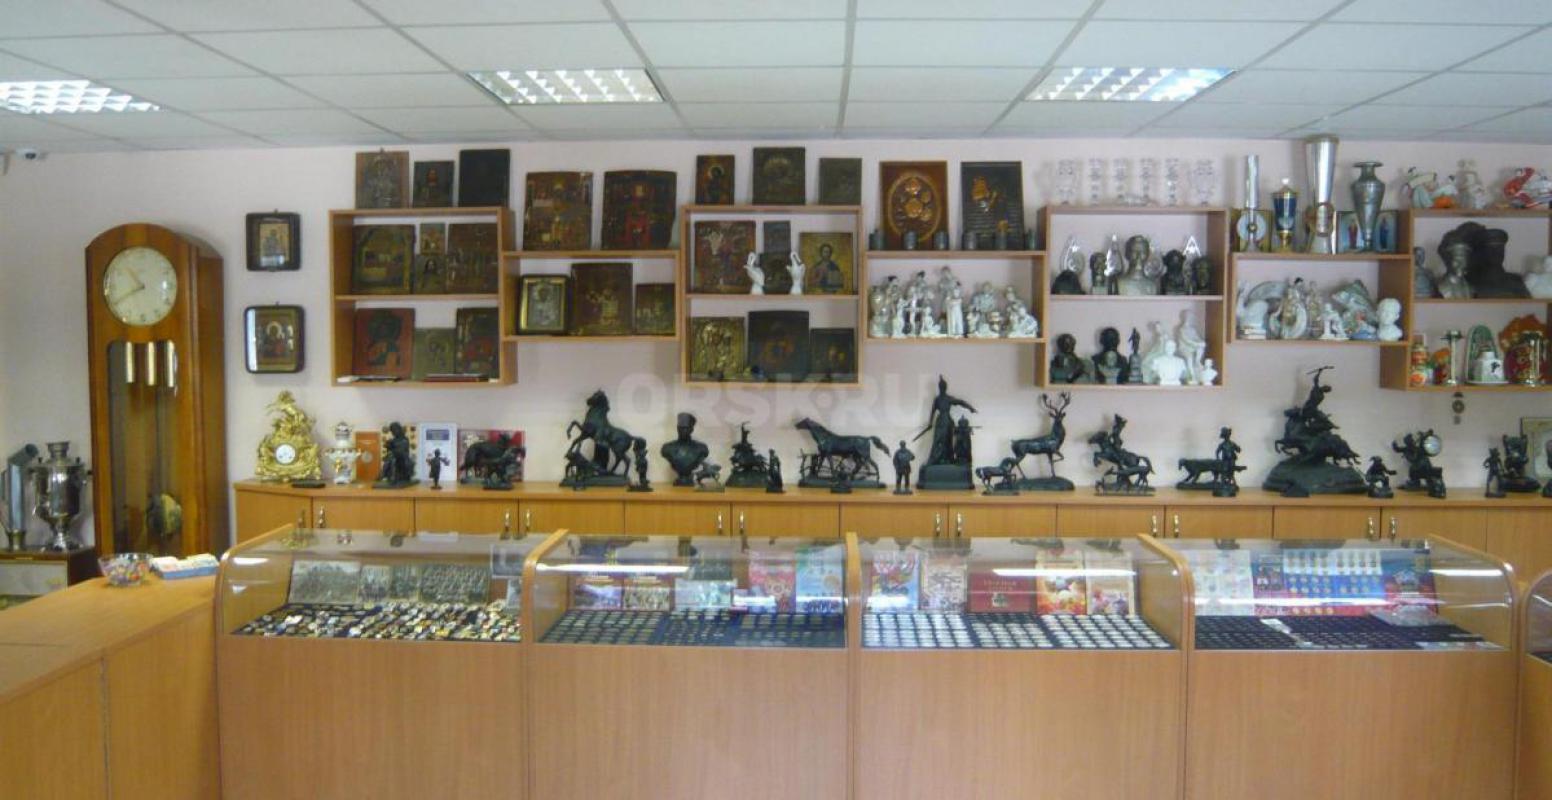 Магазин "АНТИКВАРИАТ" предлагает к покупке широкий выбор предметов старины и коллекциониро - Орск